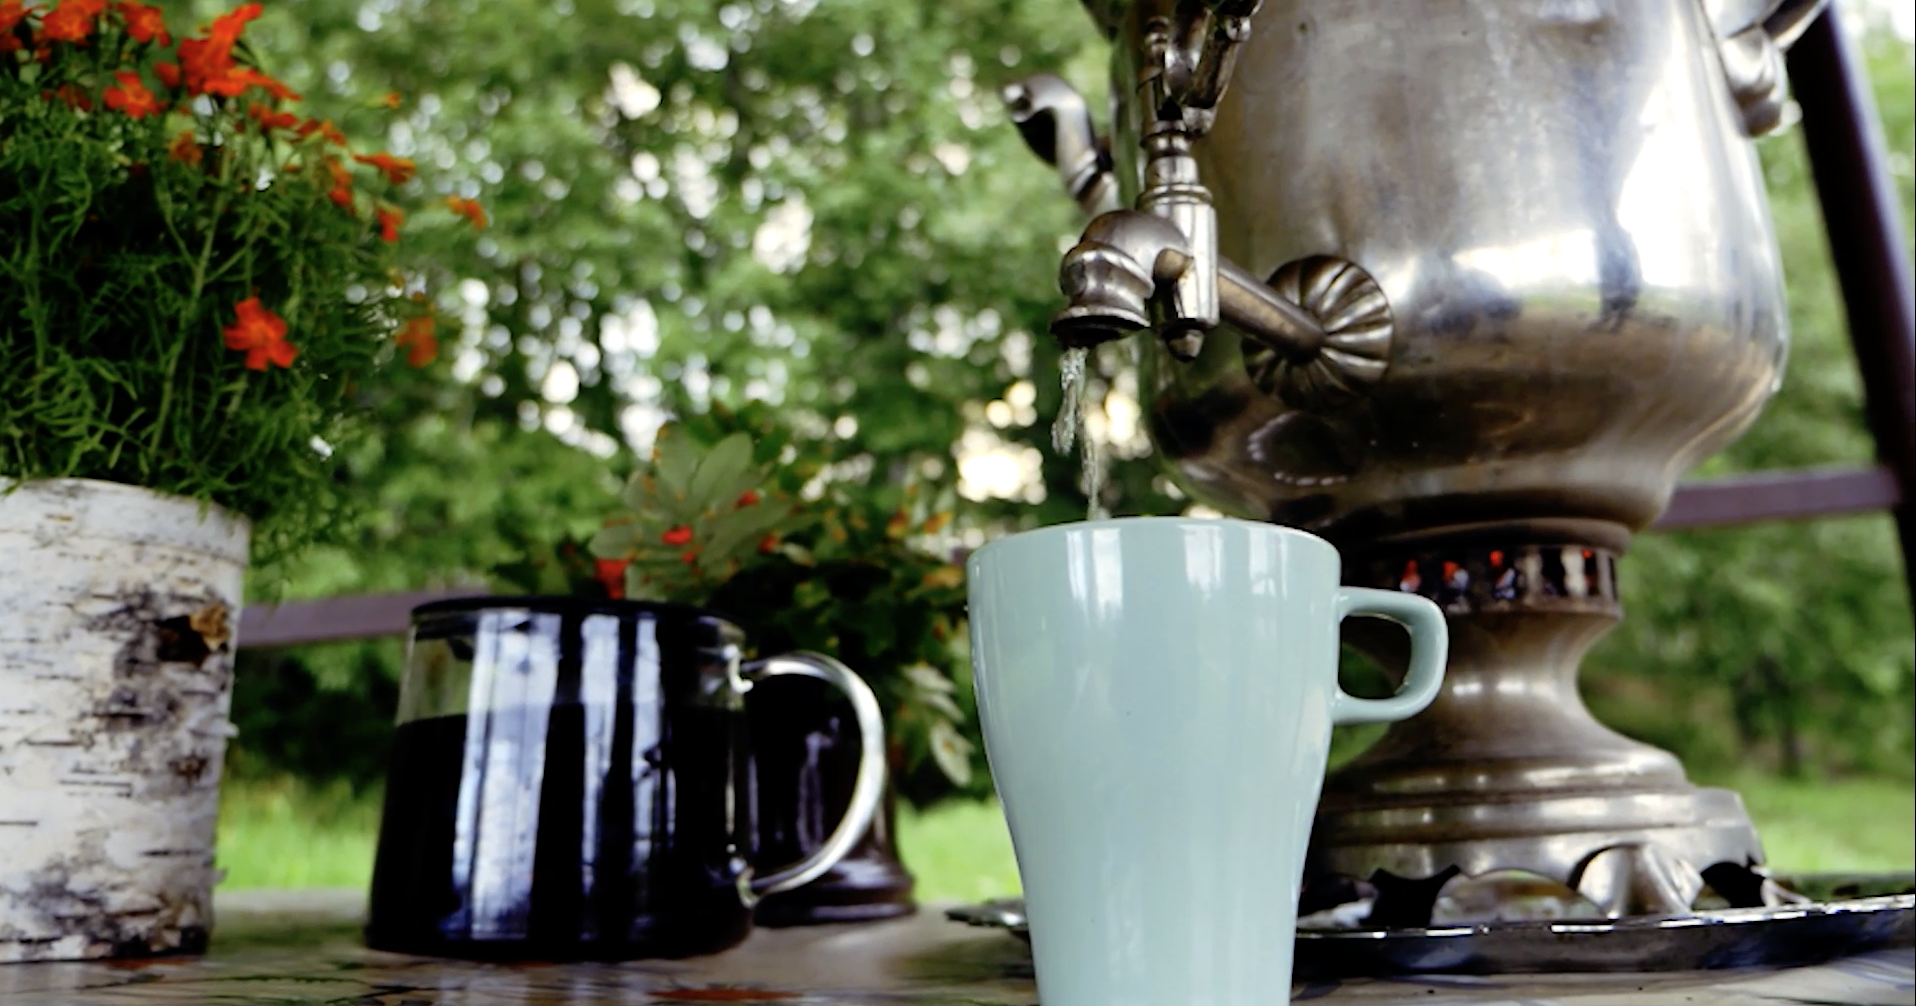 Настойки и чаи из разнотравья стали символом карельского застолья. Фото предоставлено туроператором 